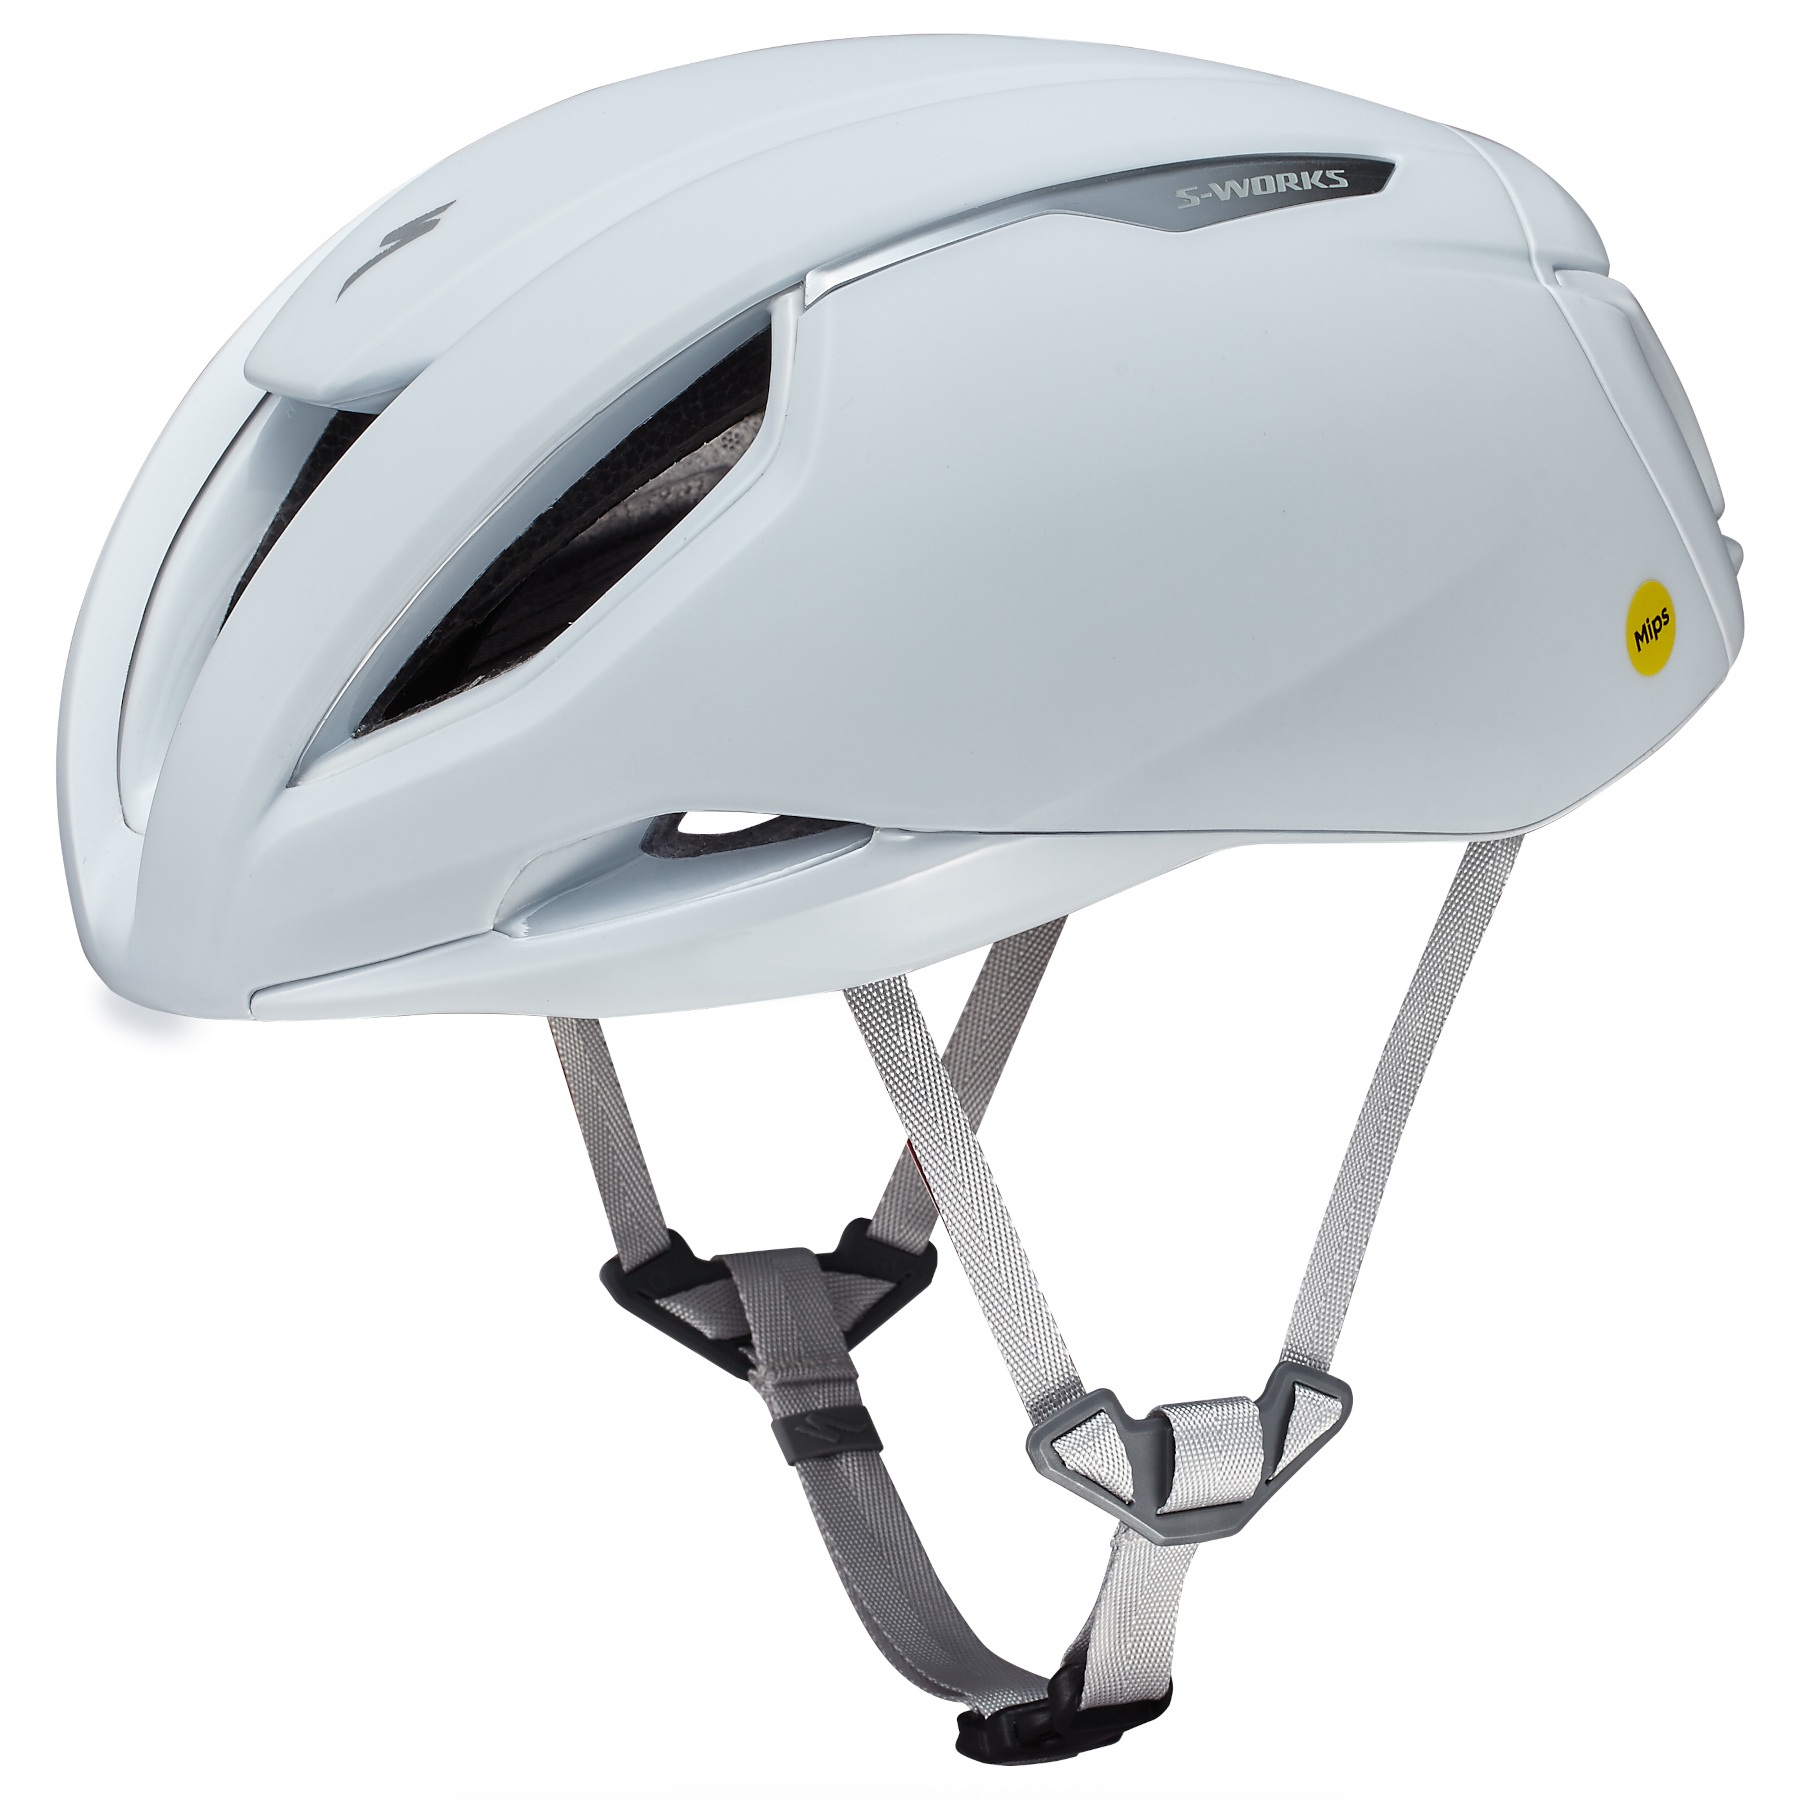 Produktbild von Specialized S-Works Evade 3 Helm - MIPS Air Node - White